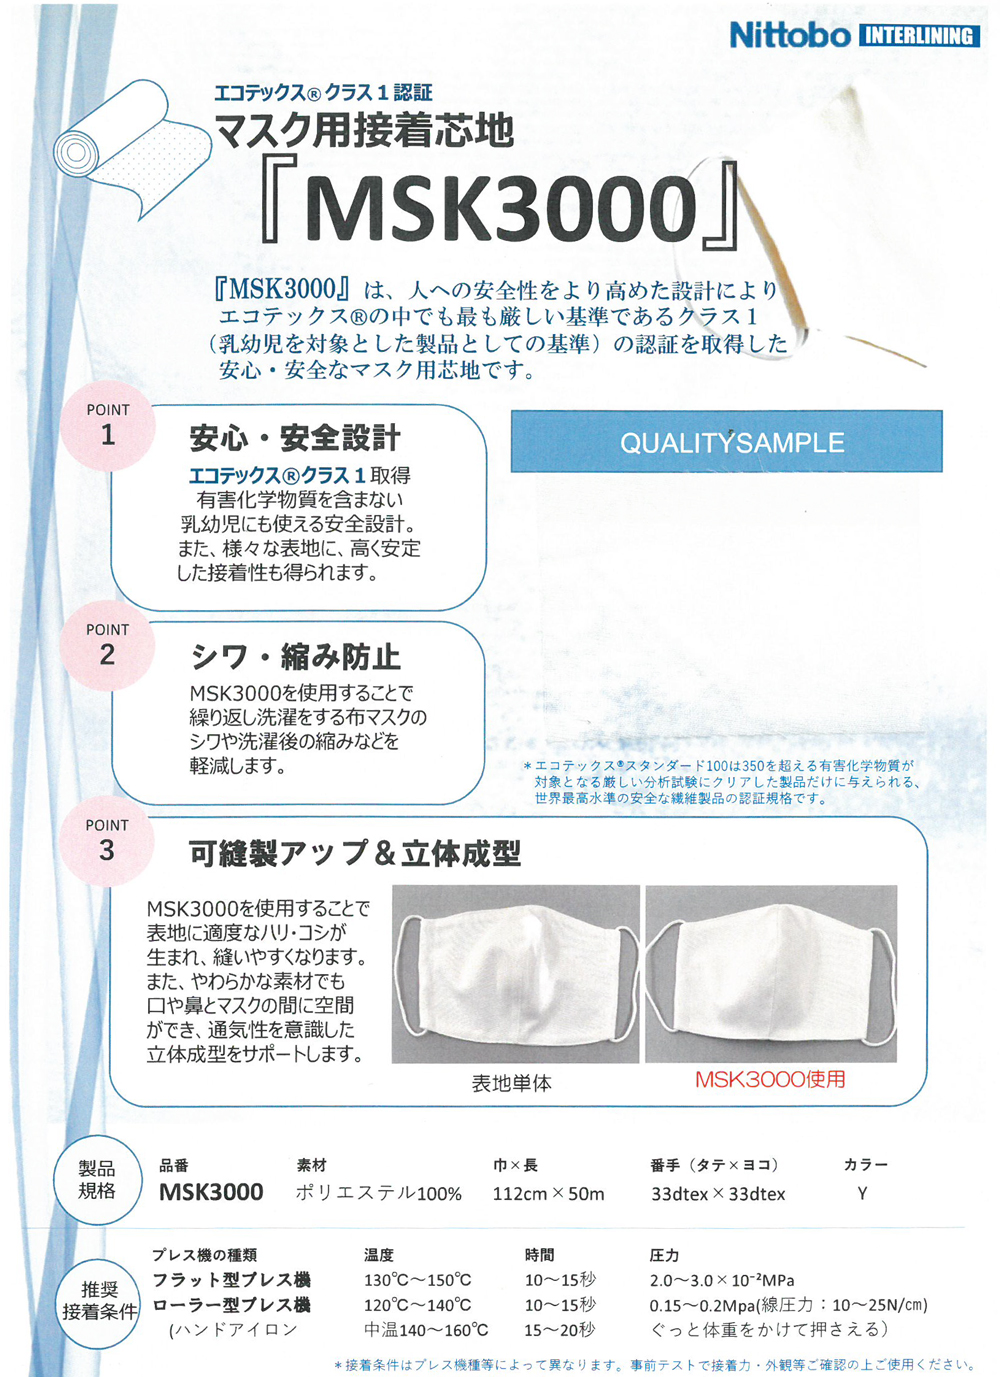 MSK3000 Entretela Fusível Certificada Ecotex® Standard 100 Para Máscaras[Entrelinha] Nittobo